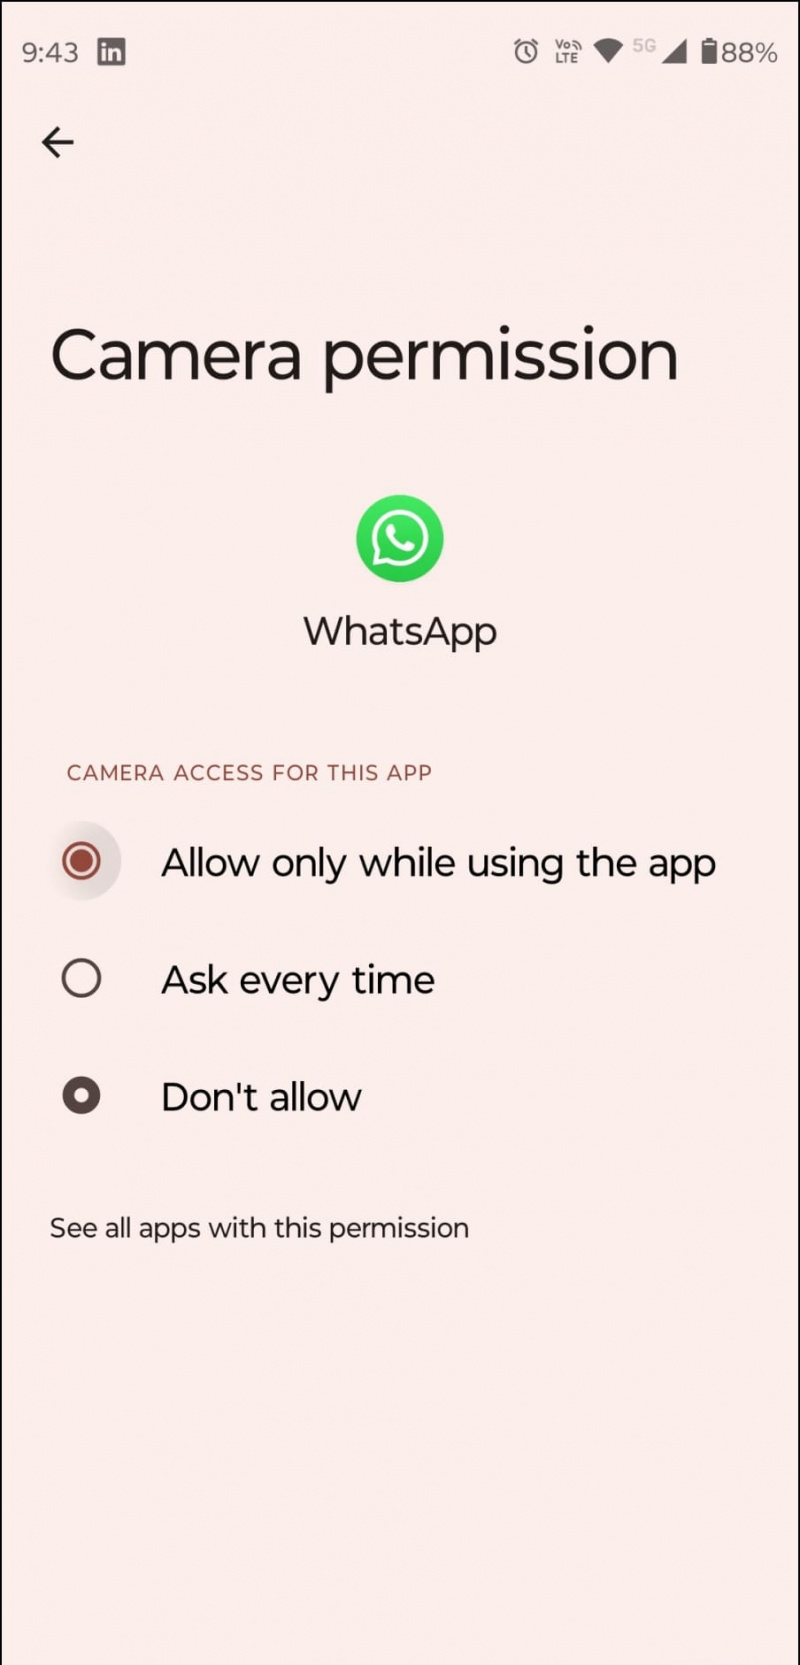   Atļaujiet piekļuvi WhatsApp kamerai, lai pieteiktos divās ierīcēs